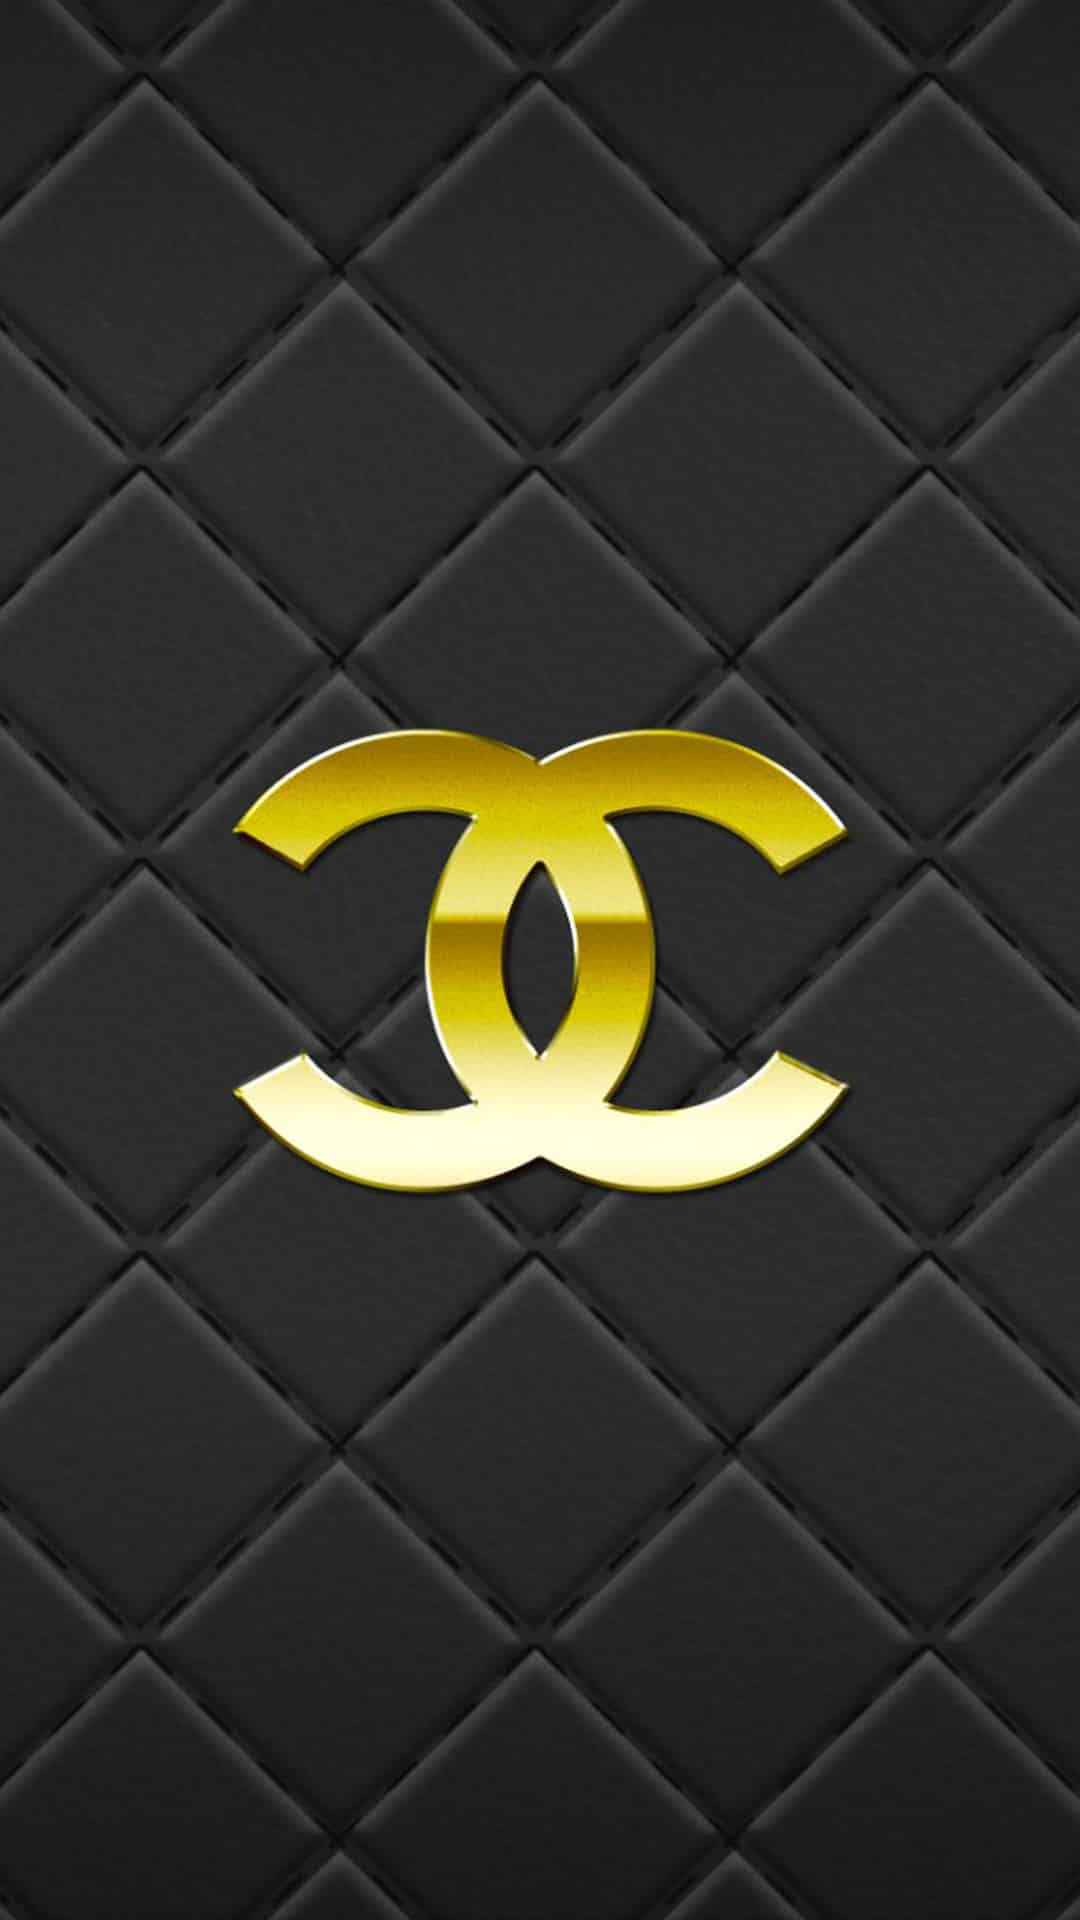 Hình nền Chanel logo vàng ánh kim.